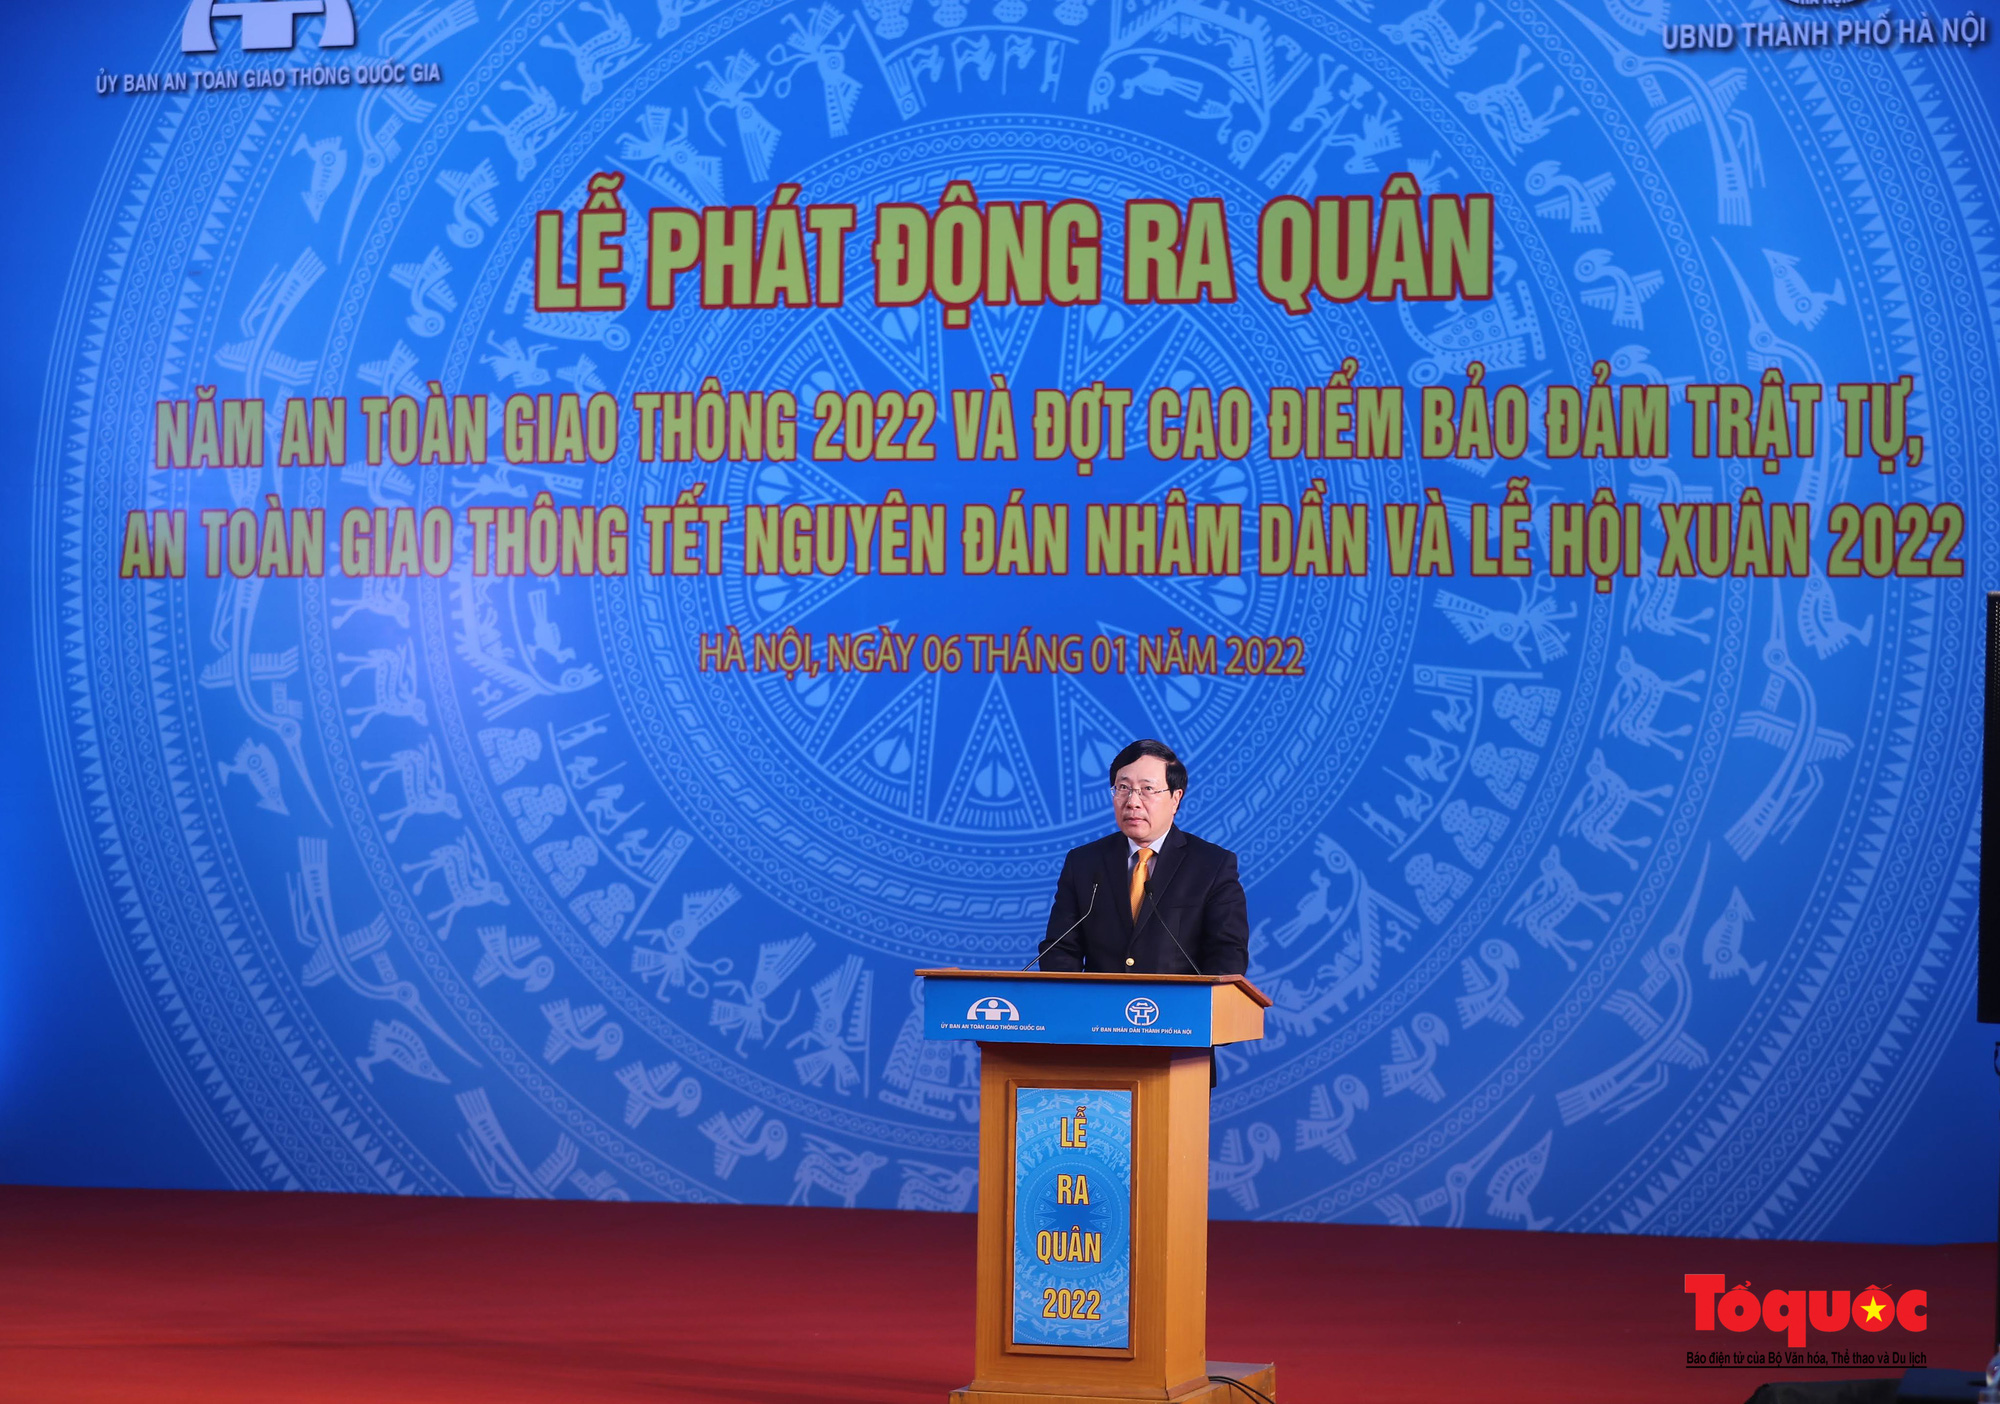 Hà Nội: Đảm bảo an toàn tuyệt đối cho người dân du xuân dịp Tết Nguyên đán Nhâm Dần và Lễ hội xuân 2022 - Ảnh 5.